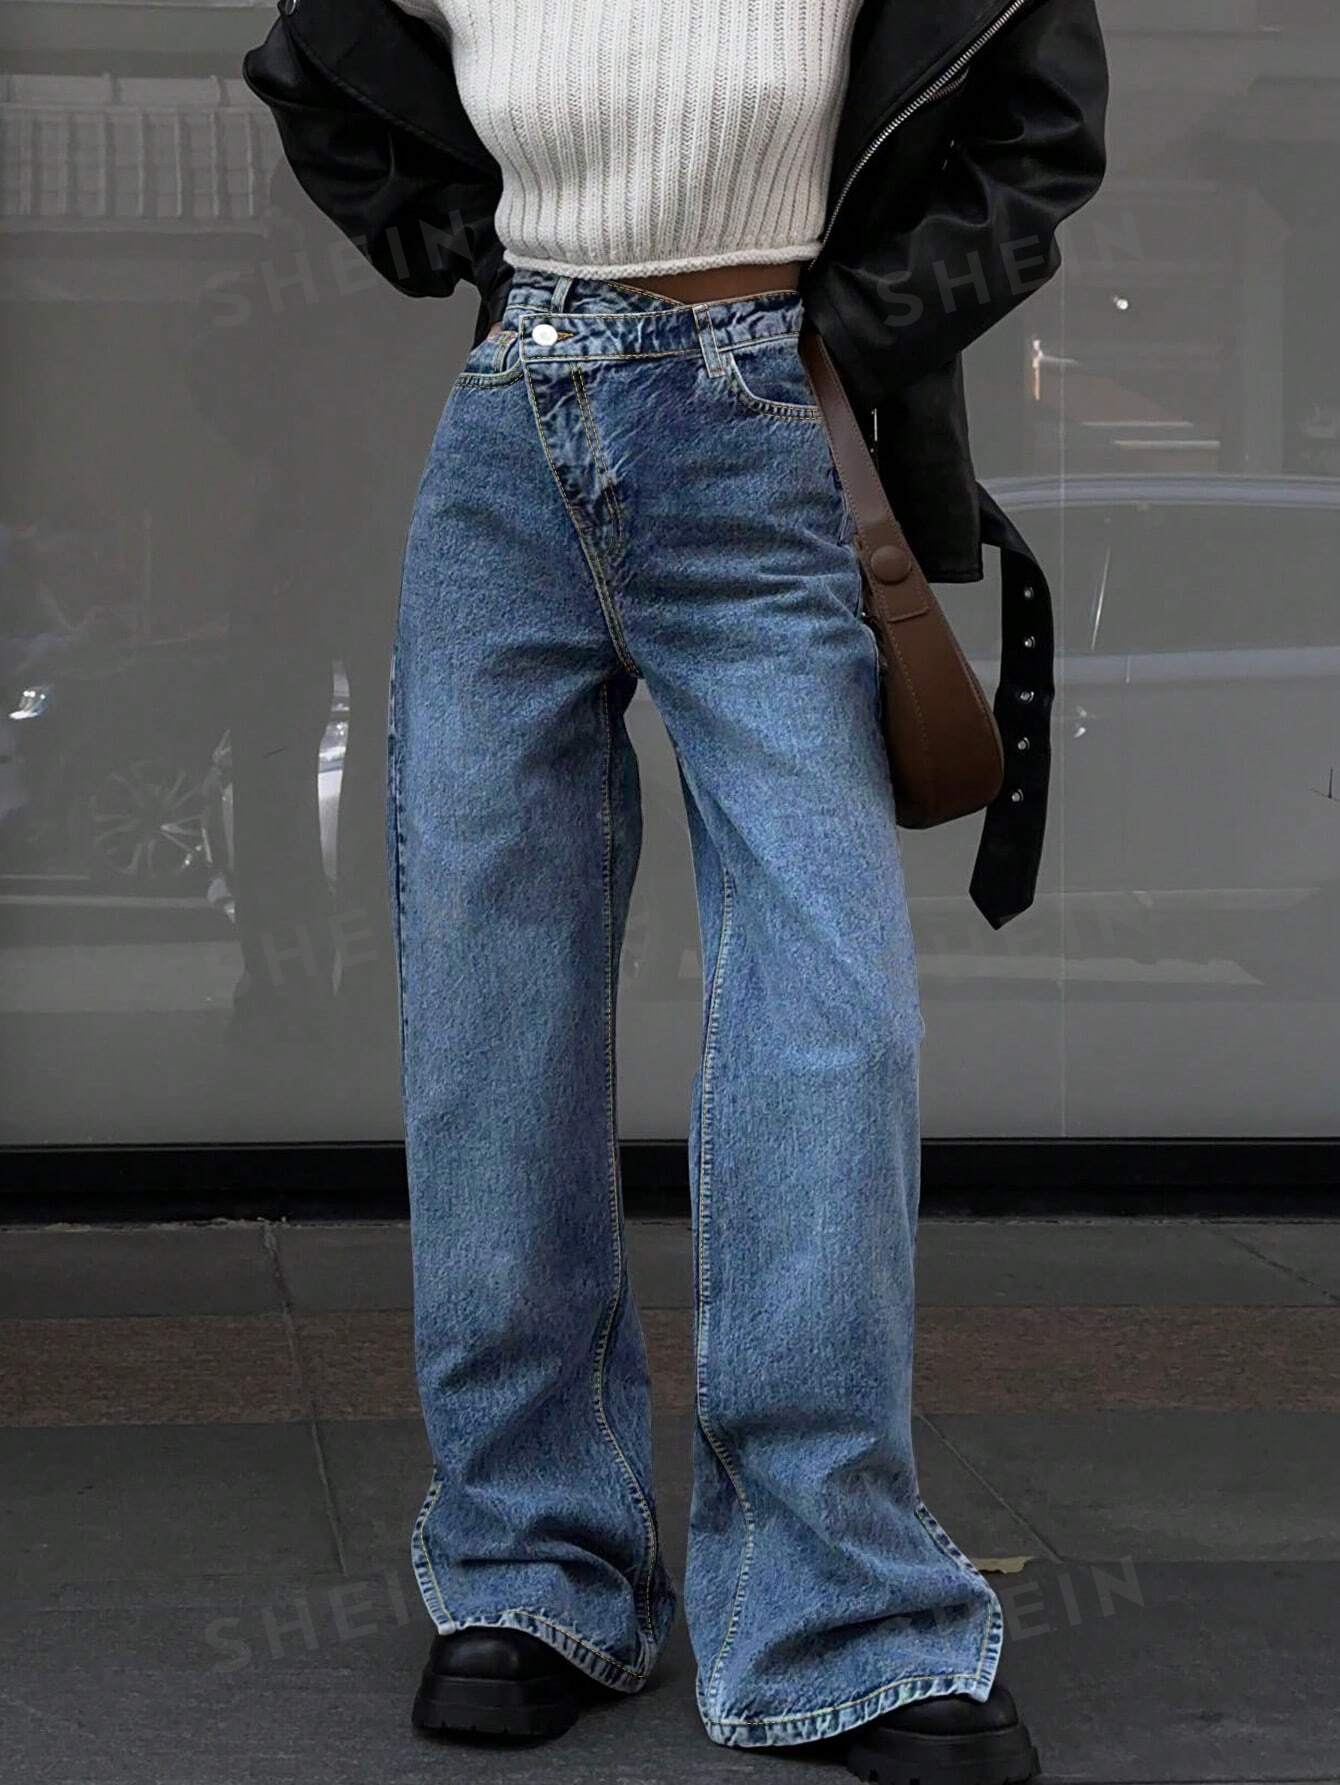 Женские прямые джинсы с завышенной талией и неравномерной талией, средняя стирка джинсы для женщин джинсы для мам джинсы с низкой талией женские высокоэластичные стрейчевые джинсы женские джинсы с эффектом потертости